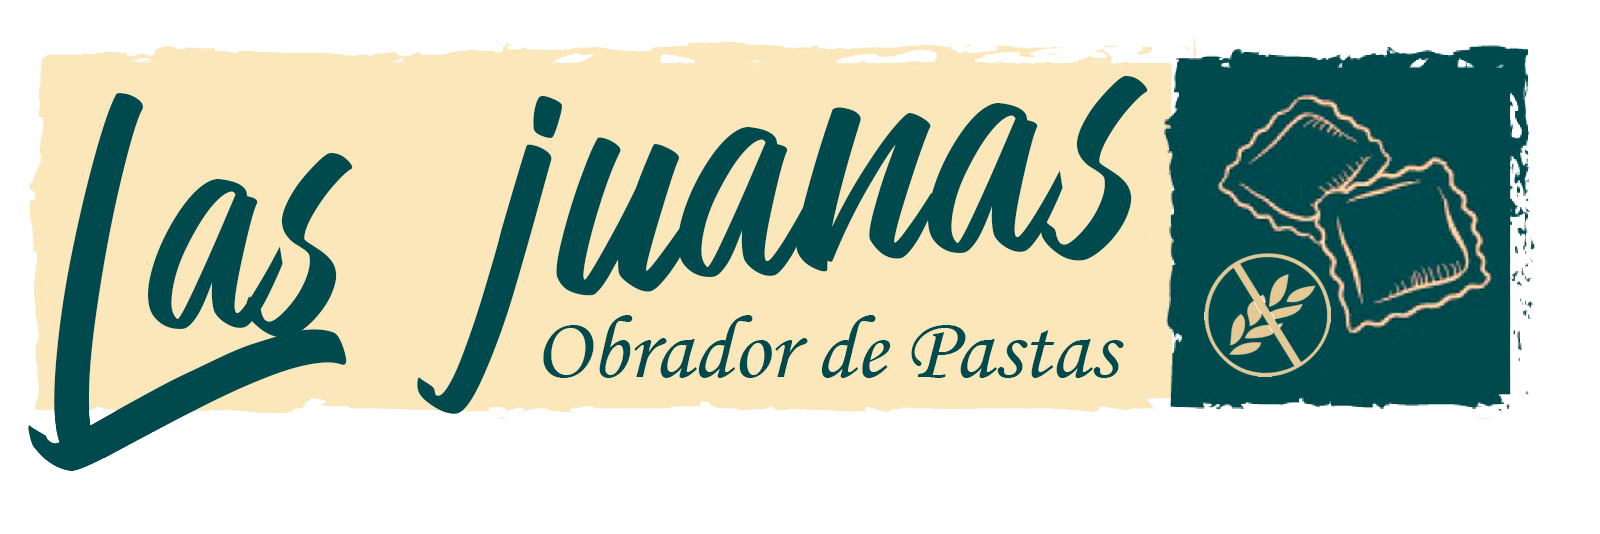 Logotipo del obrador de pastas las juanas para la plantilla de email